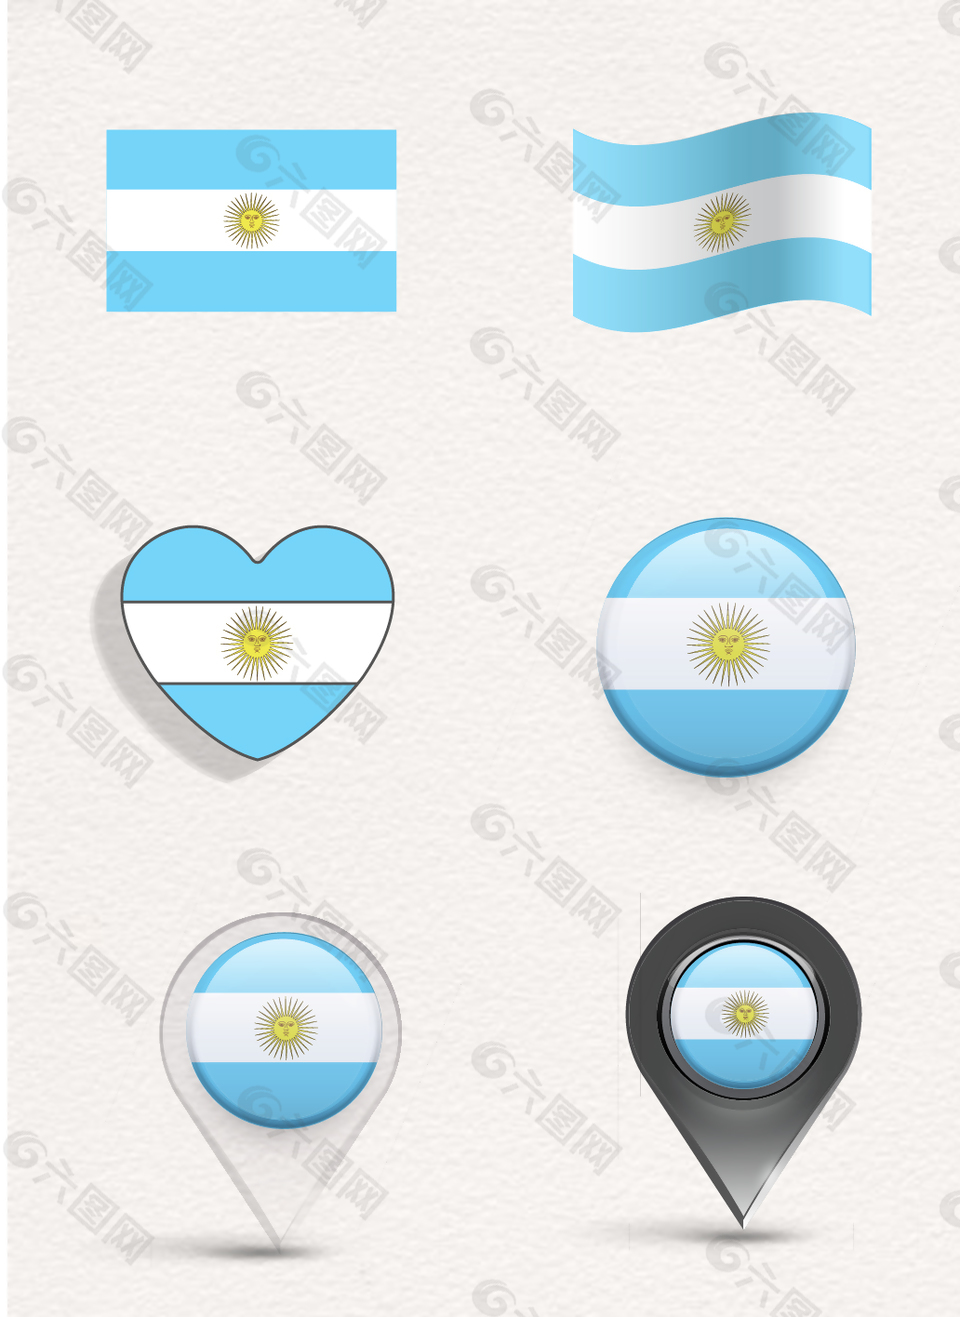 矢量蓝白蓝阿根廷国旗设计素材